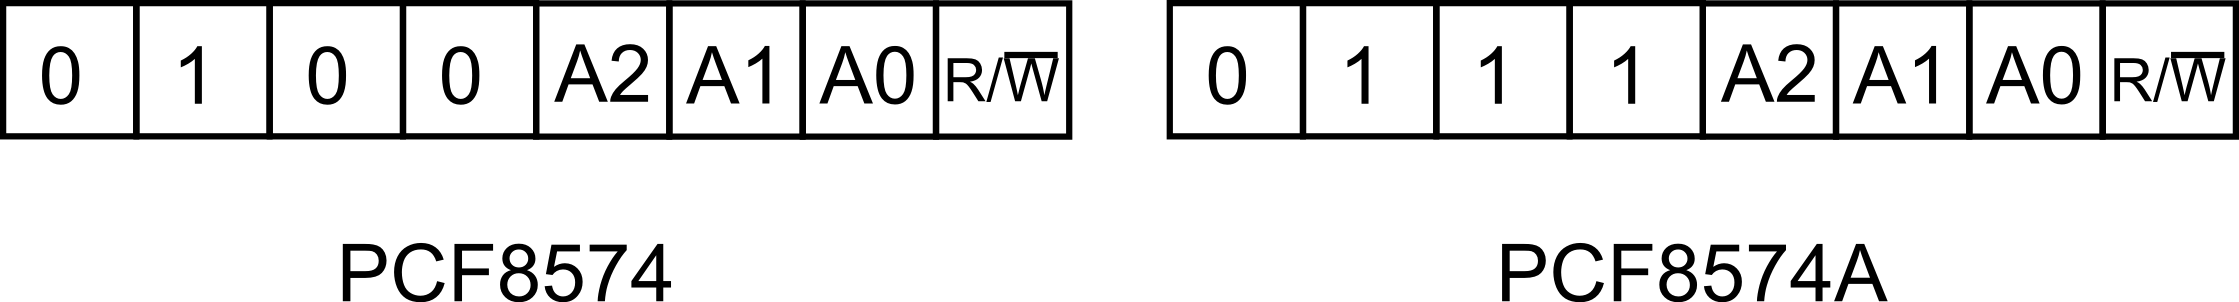 Figura 2: Indirizzo dell'integrato PCF8574 e PCF8574A